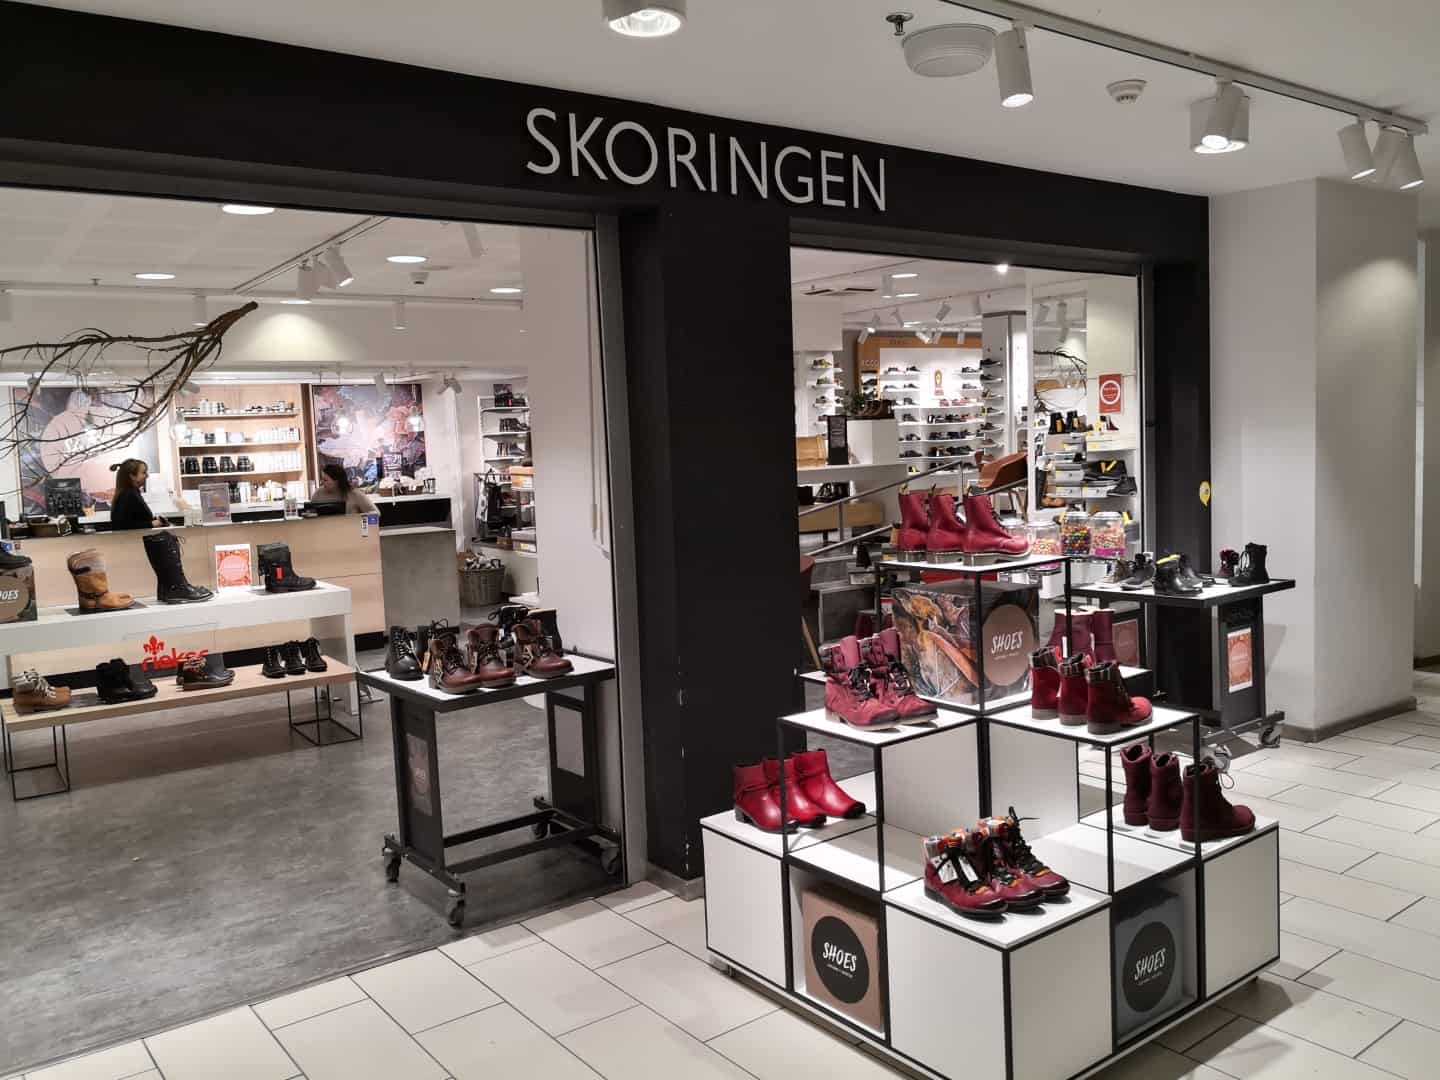 Lokal butik får ny ejer: Sander Sko siger til Skoringen i Horsens | ugeavisen.dk